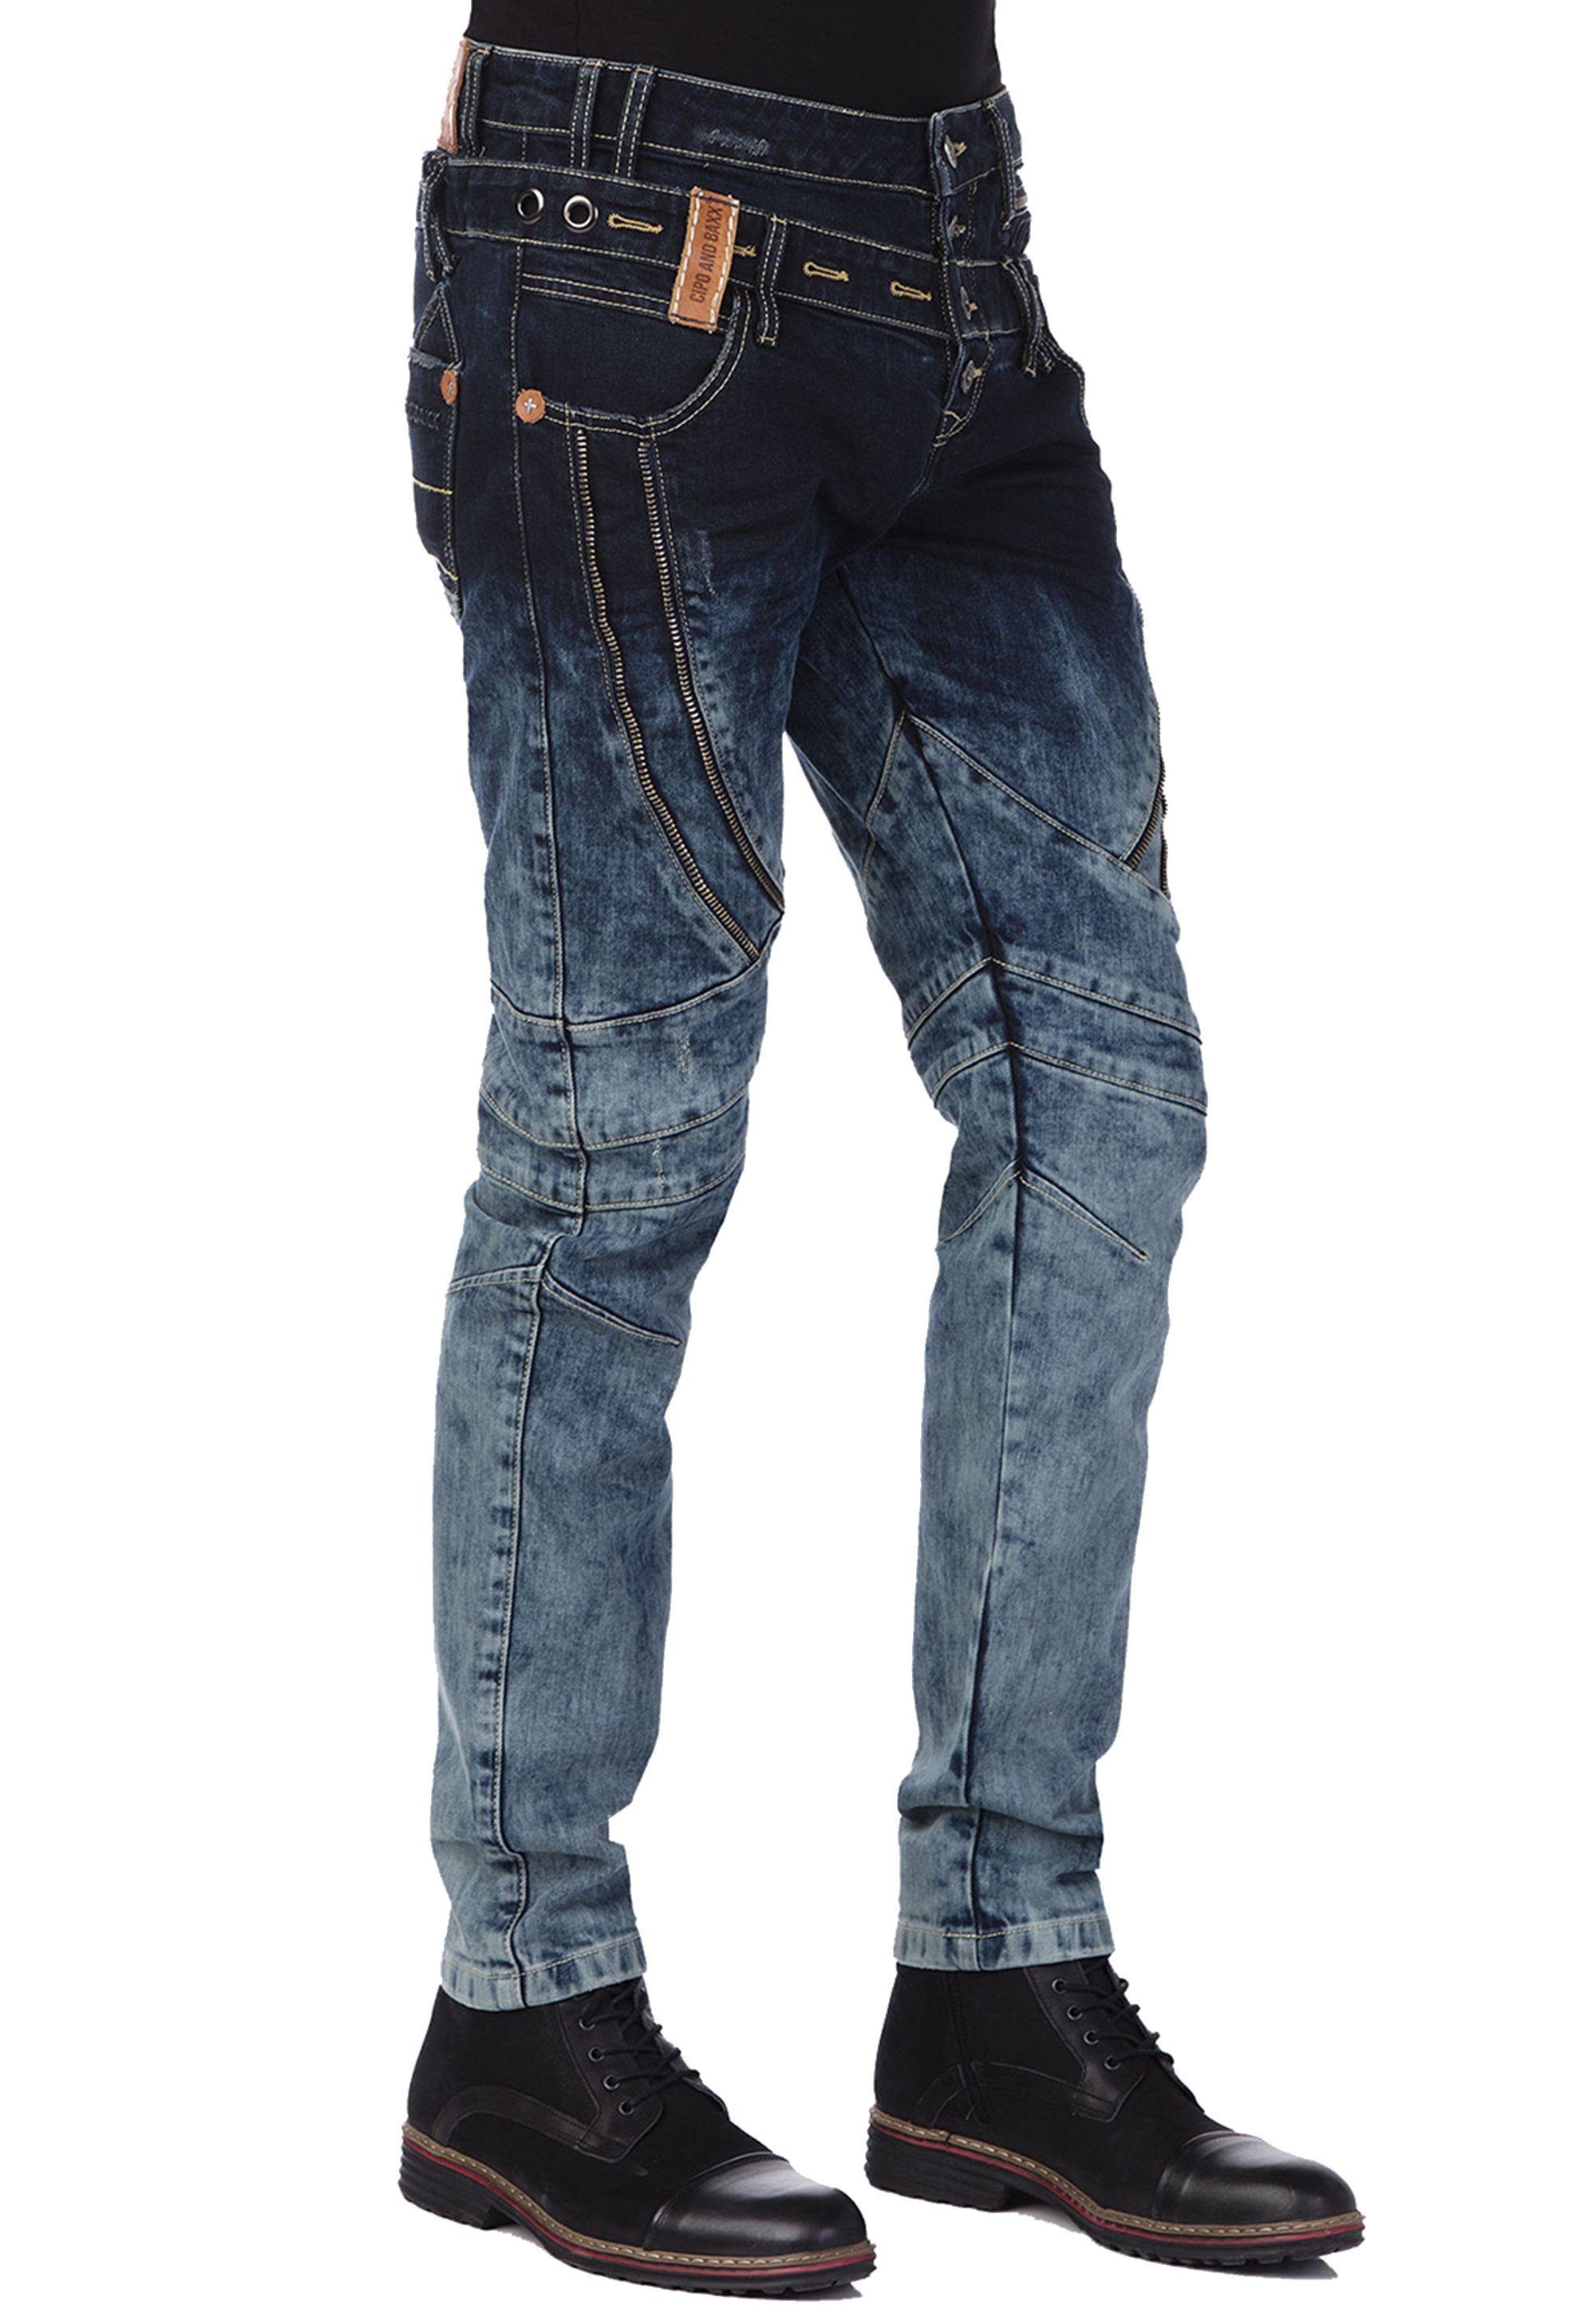 Cipo & Baxx Bequeme Jeans mit stylischem Doppelbund